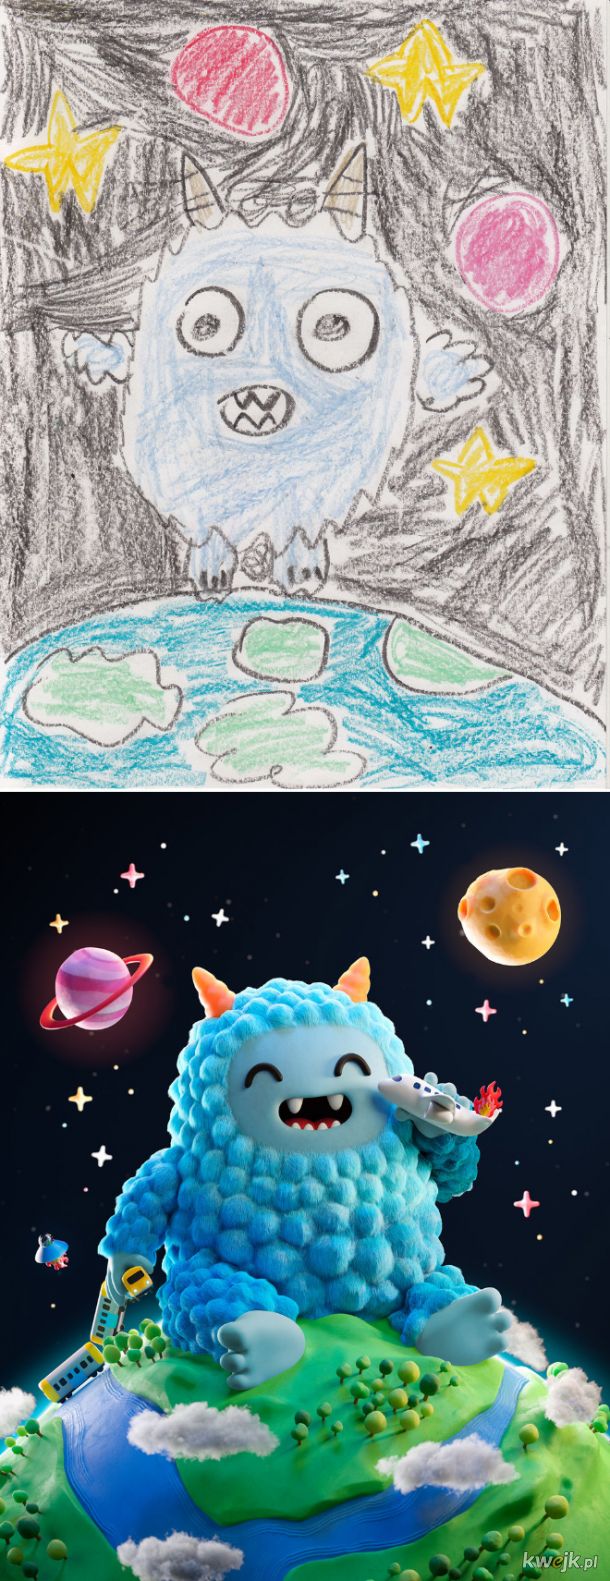 The Monster Project - artyści odtwarzają dziecięce rysunki potworów, obrazek 8